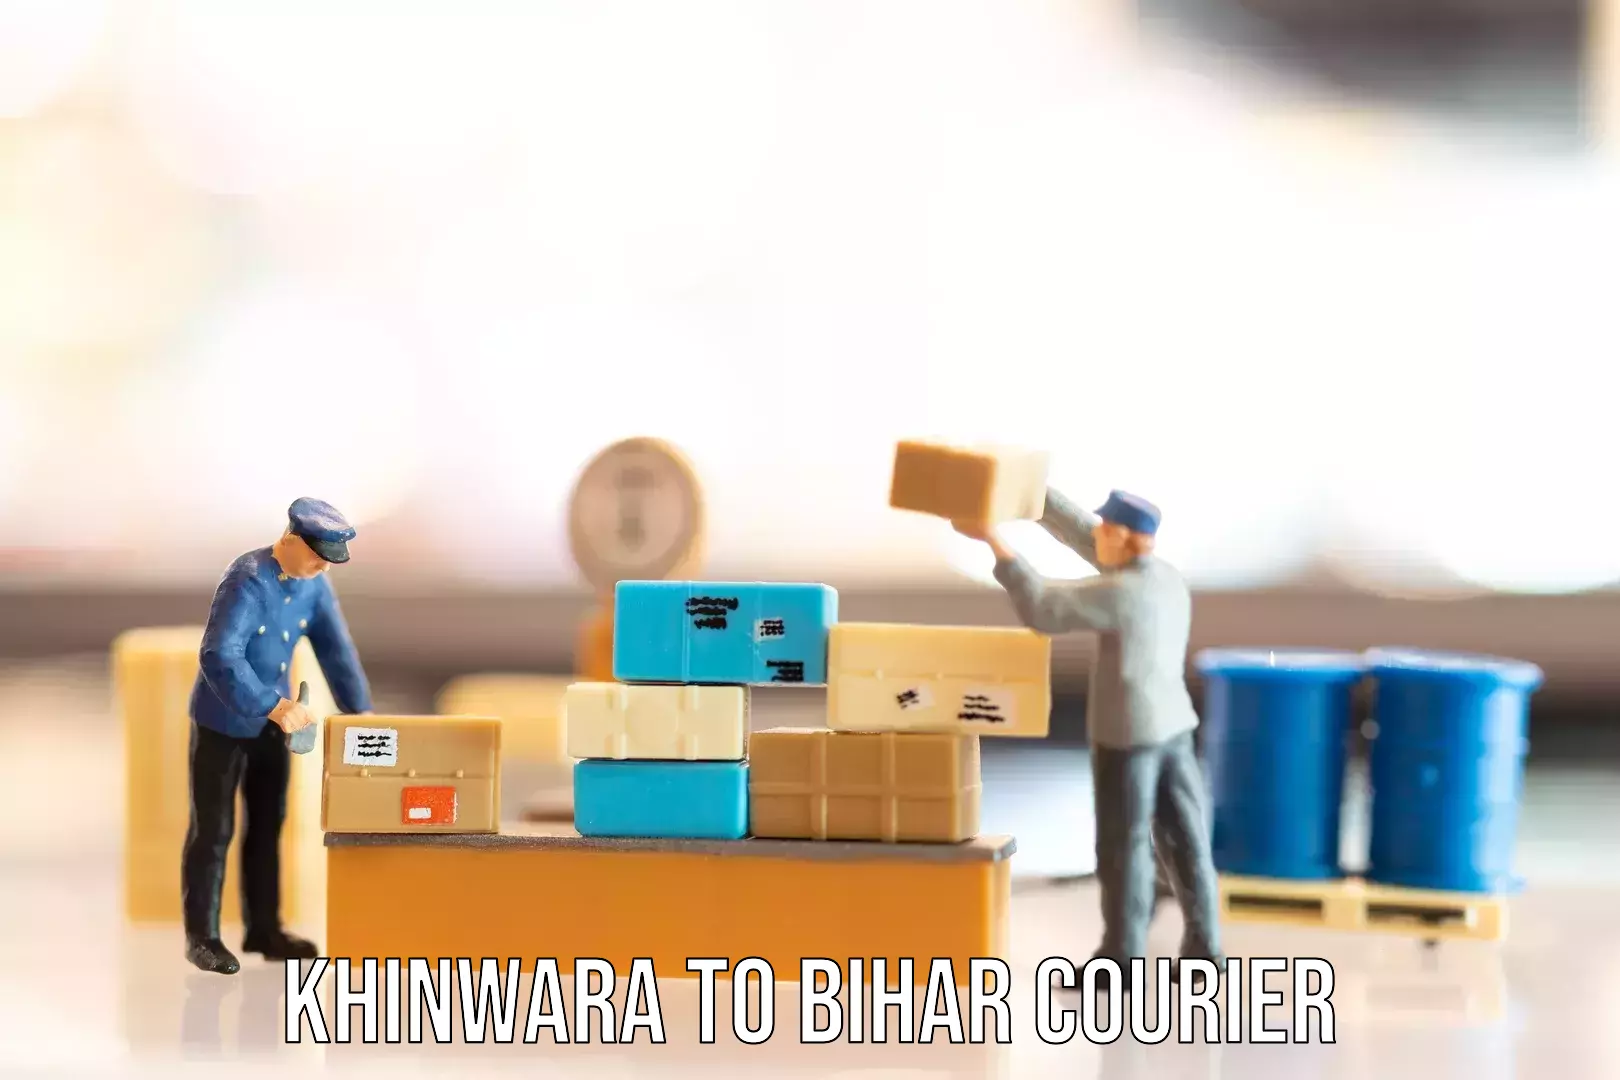 Baggage transport services Khinwara to Bihar